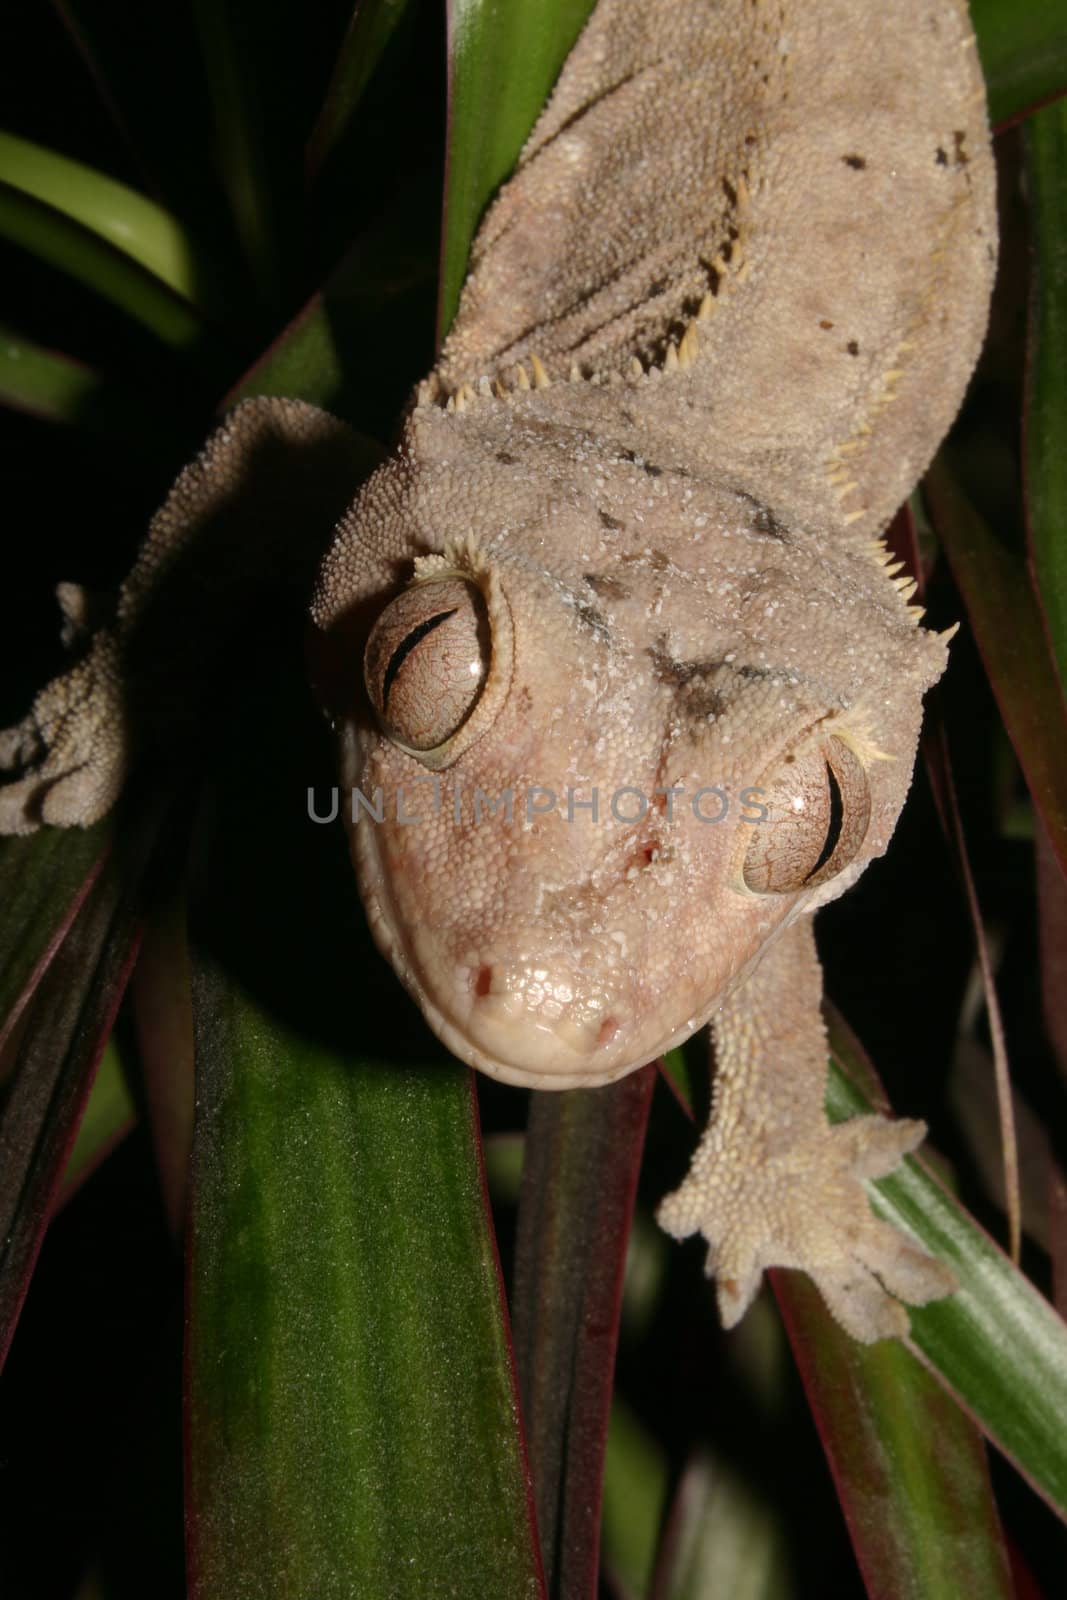 Crowns Gecko (Rhacodactylus ciliatus) on a plant - Portrait